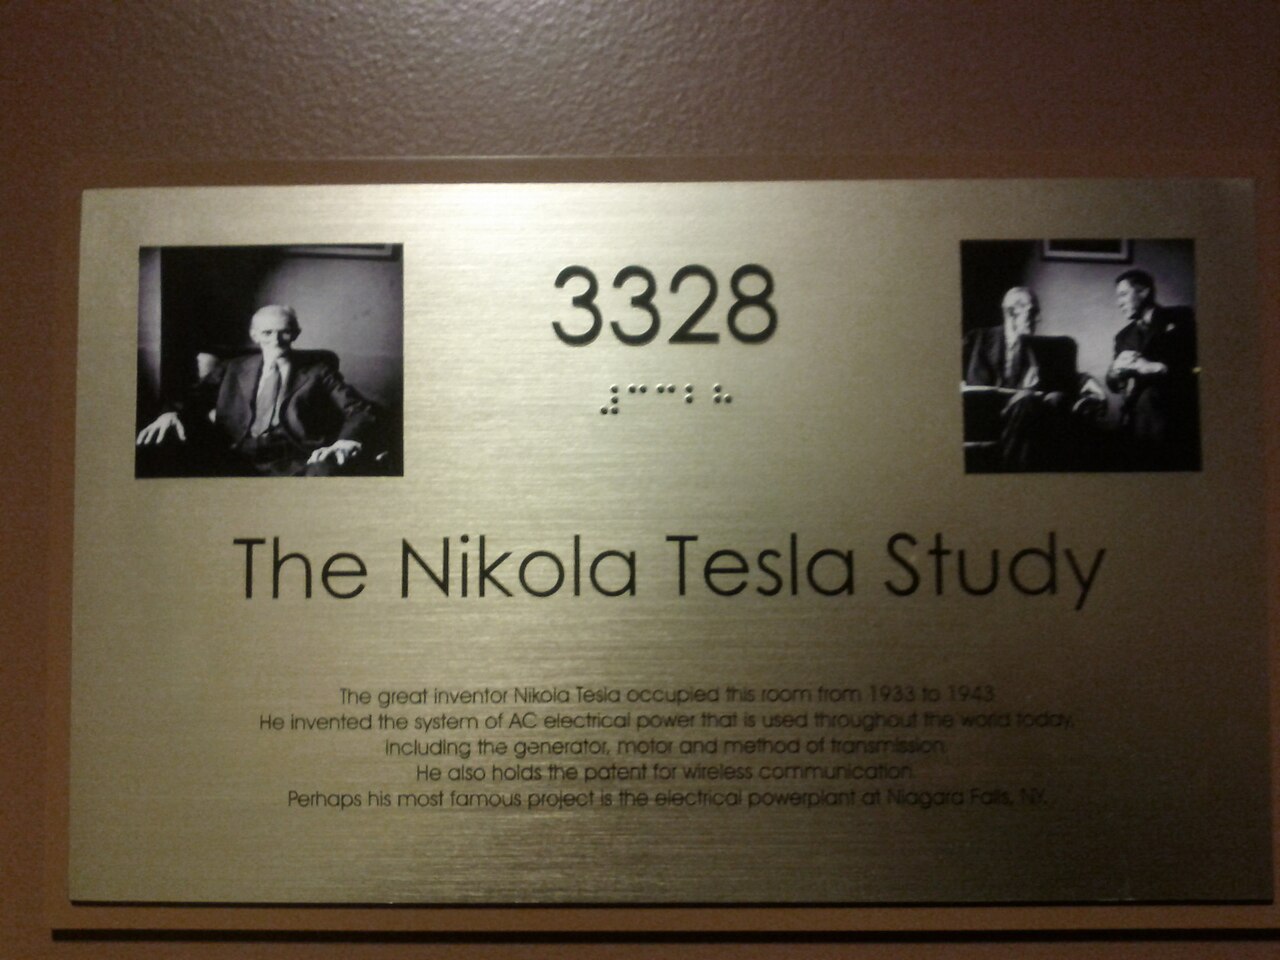 1280px-New_yorker_hotel_-_nikola_tesla_study_door_3328_-_plaque_closeup.jpg